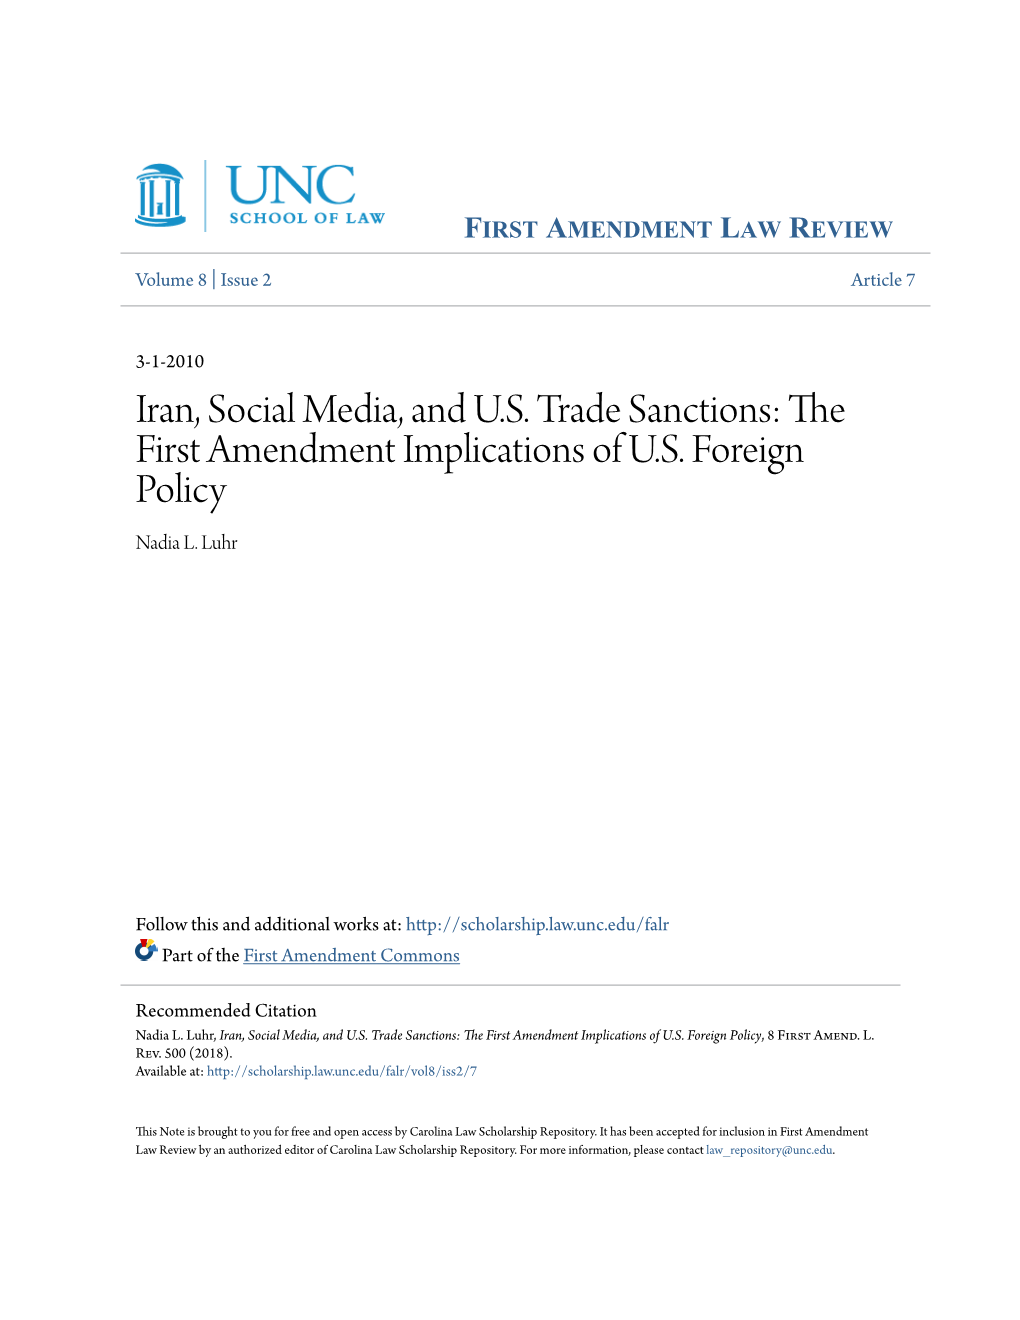 Iran, Social Media, and US Trade Sanctions